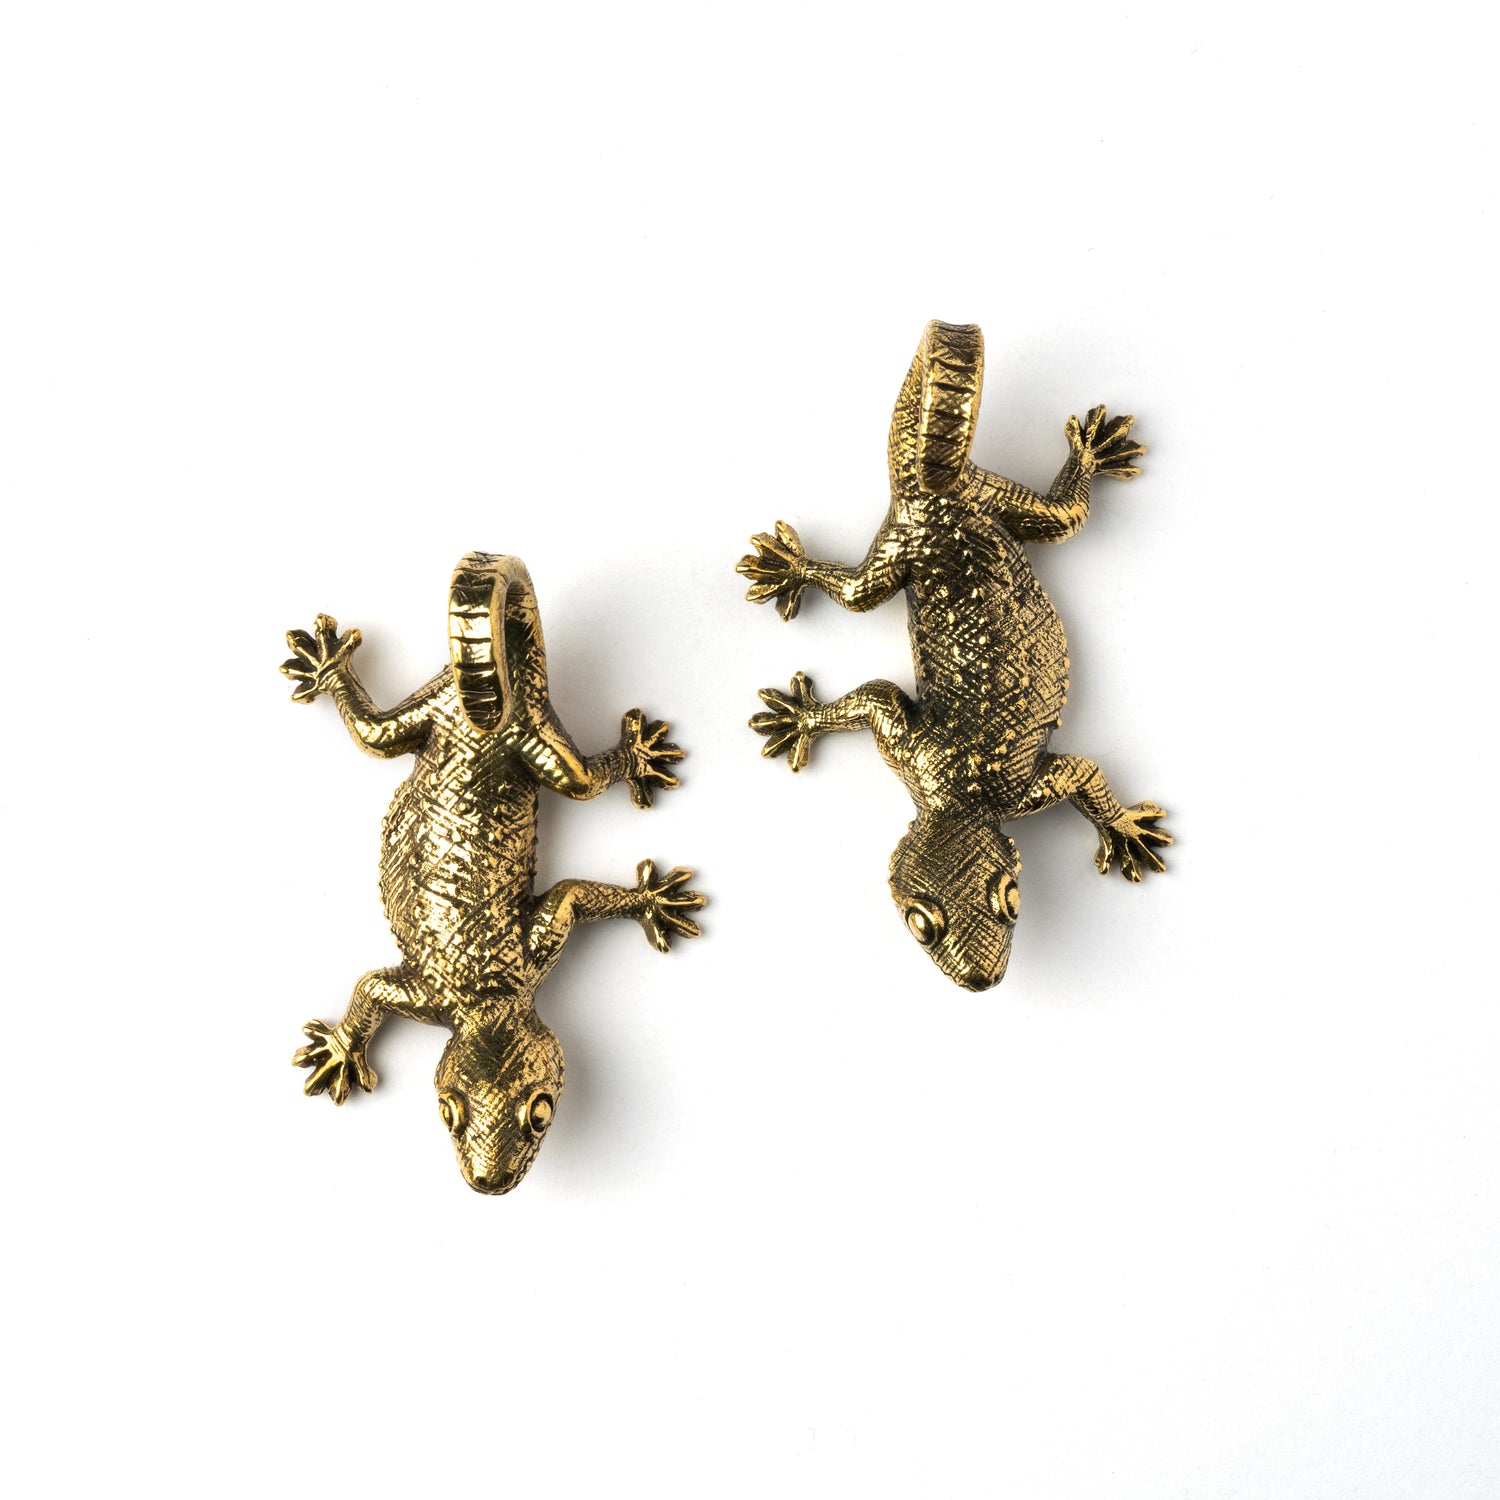 pair of gold brass lizard ear hangers frontal view